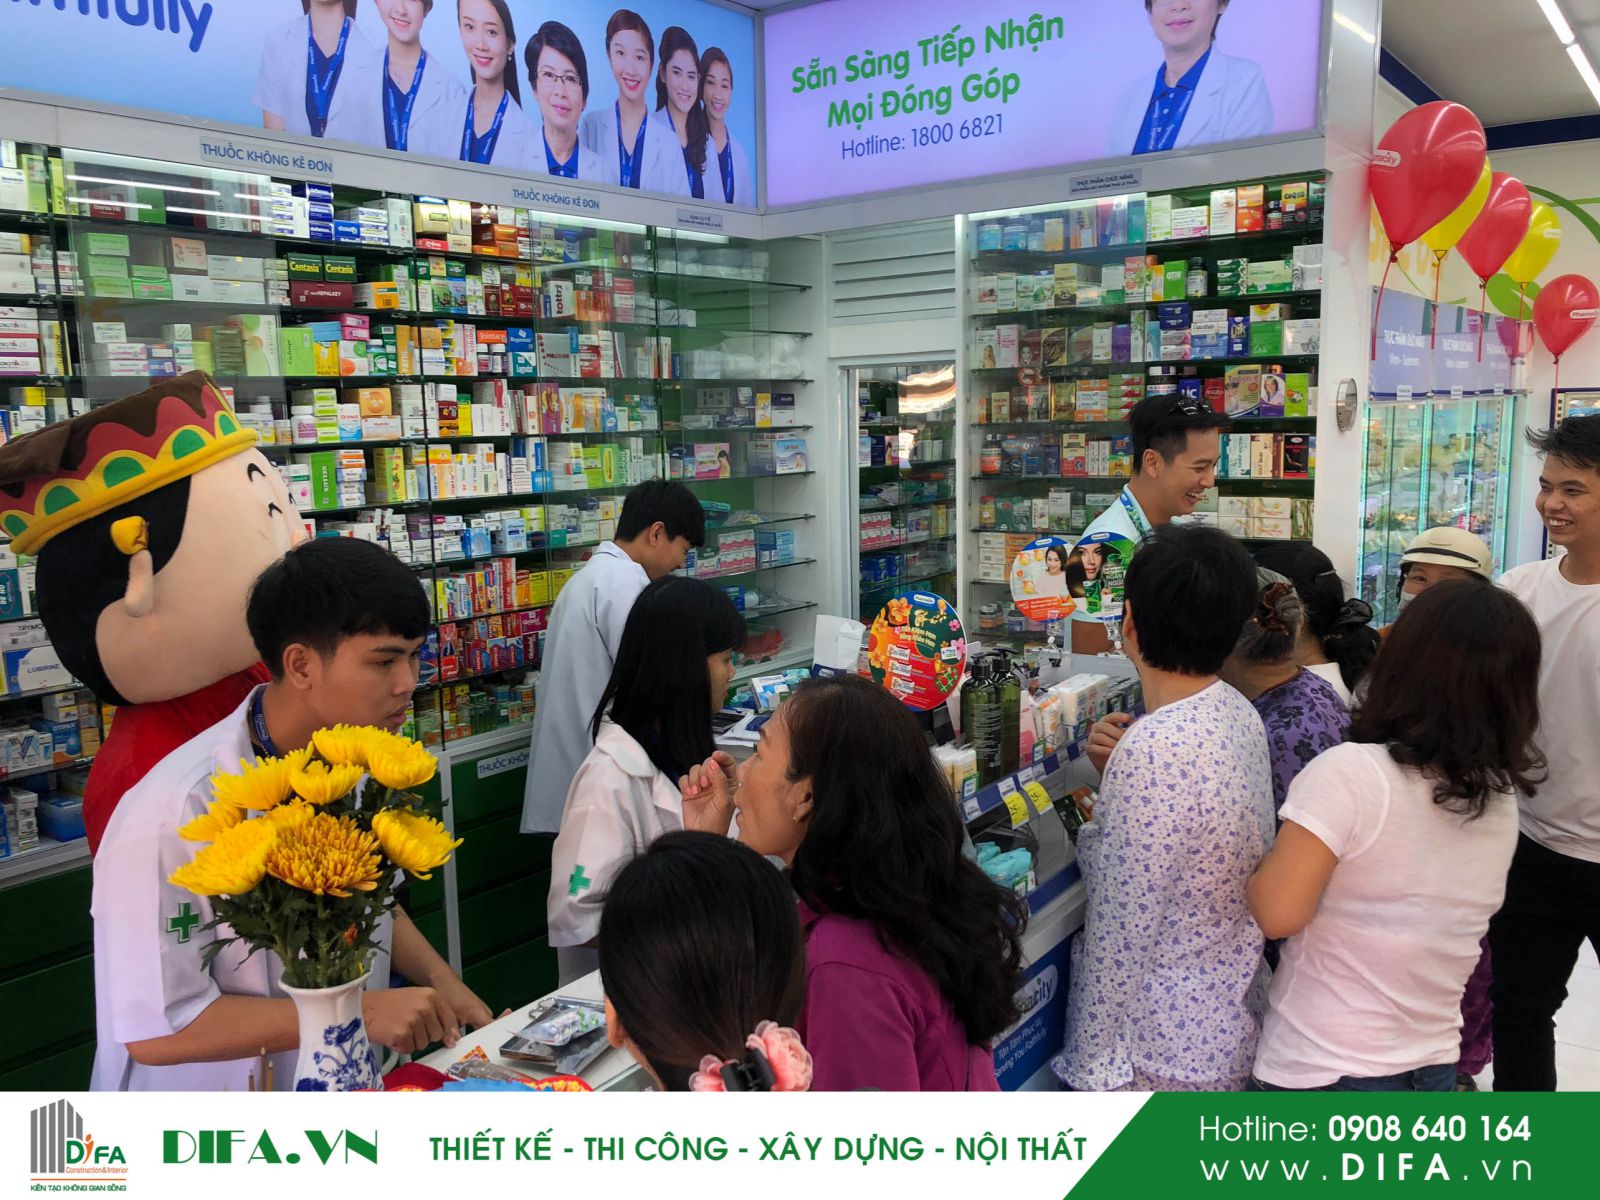 Nội thất nhà thuốc - Pharmacity số 296 - 131A Lý Thái Tổ - Đà Nẵng